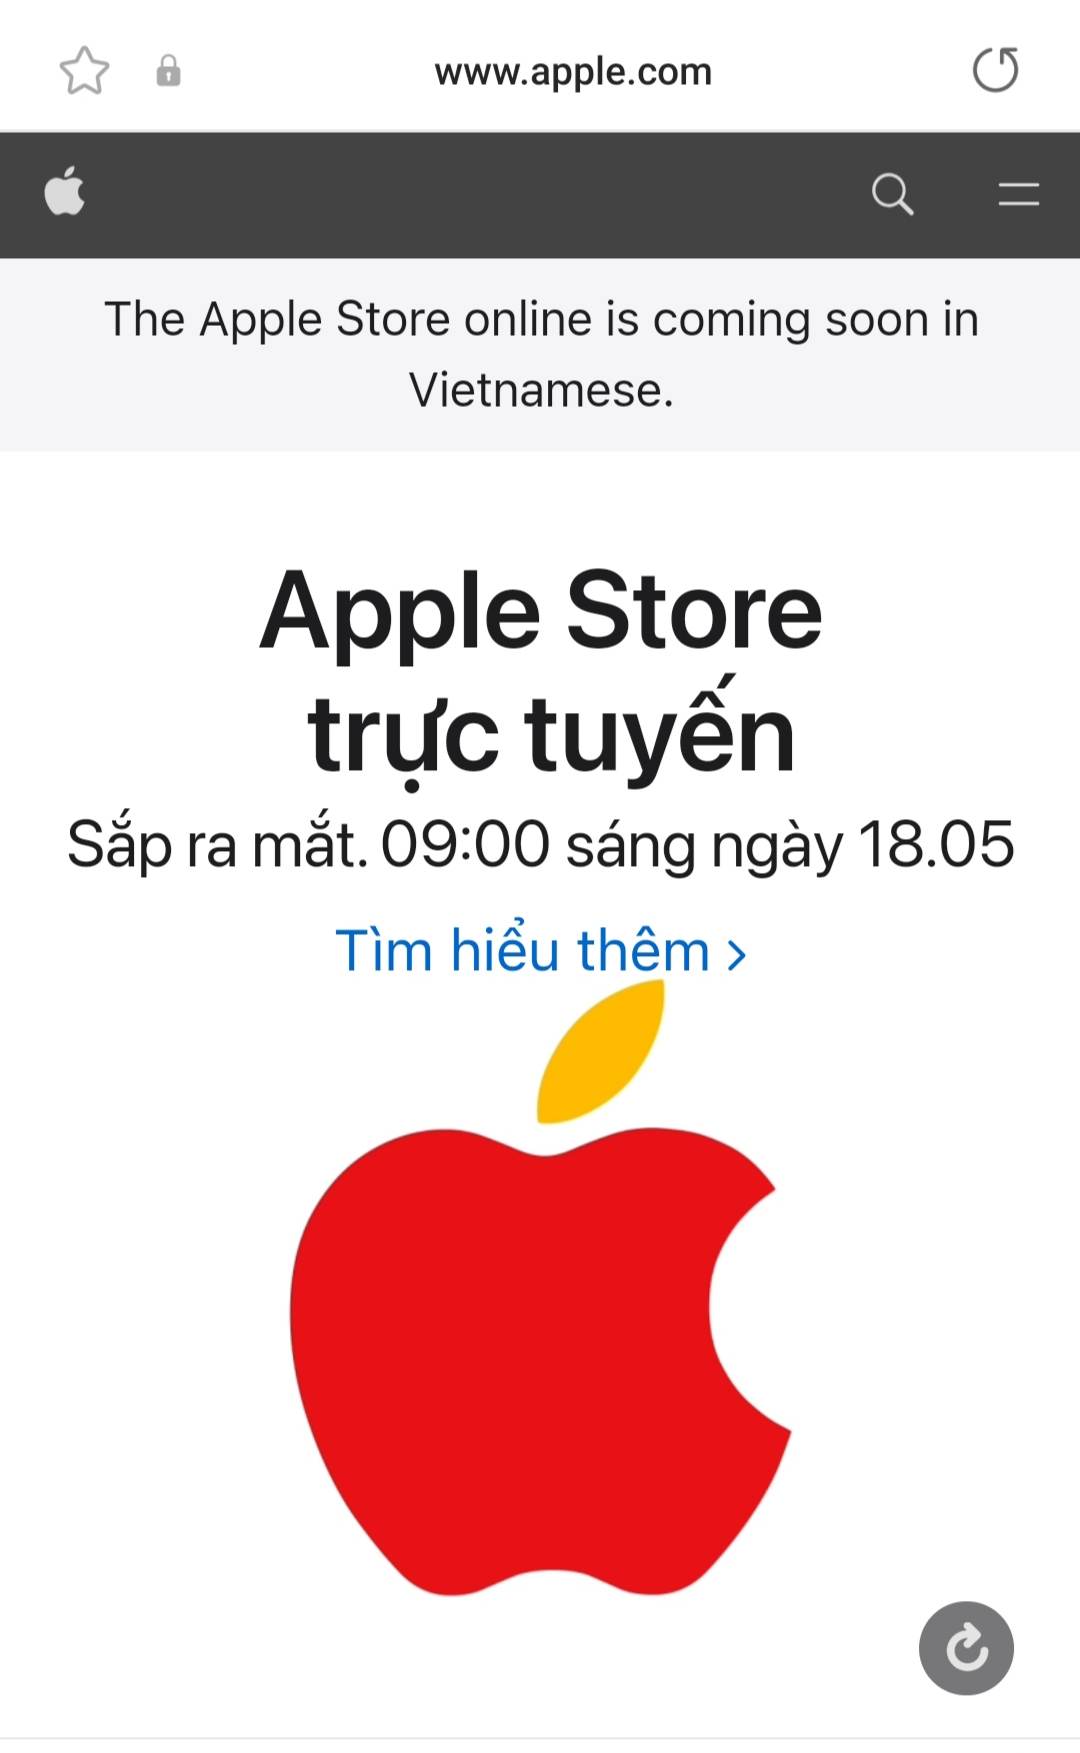 Apple sắp khai trương cửa hàng trực tuyến đầu tiên tại Việt Nam.